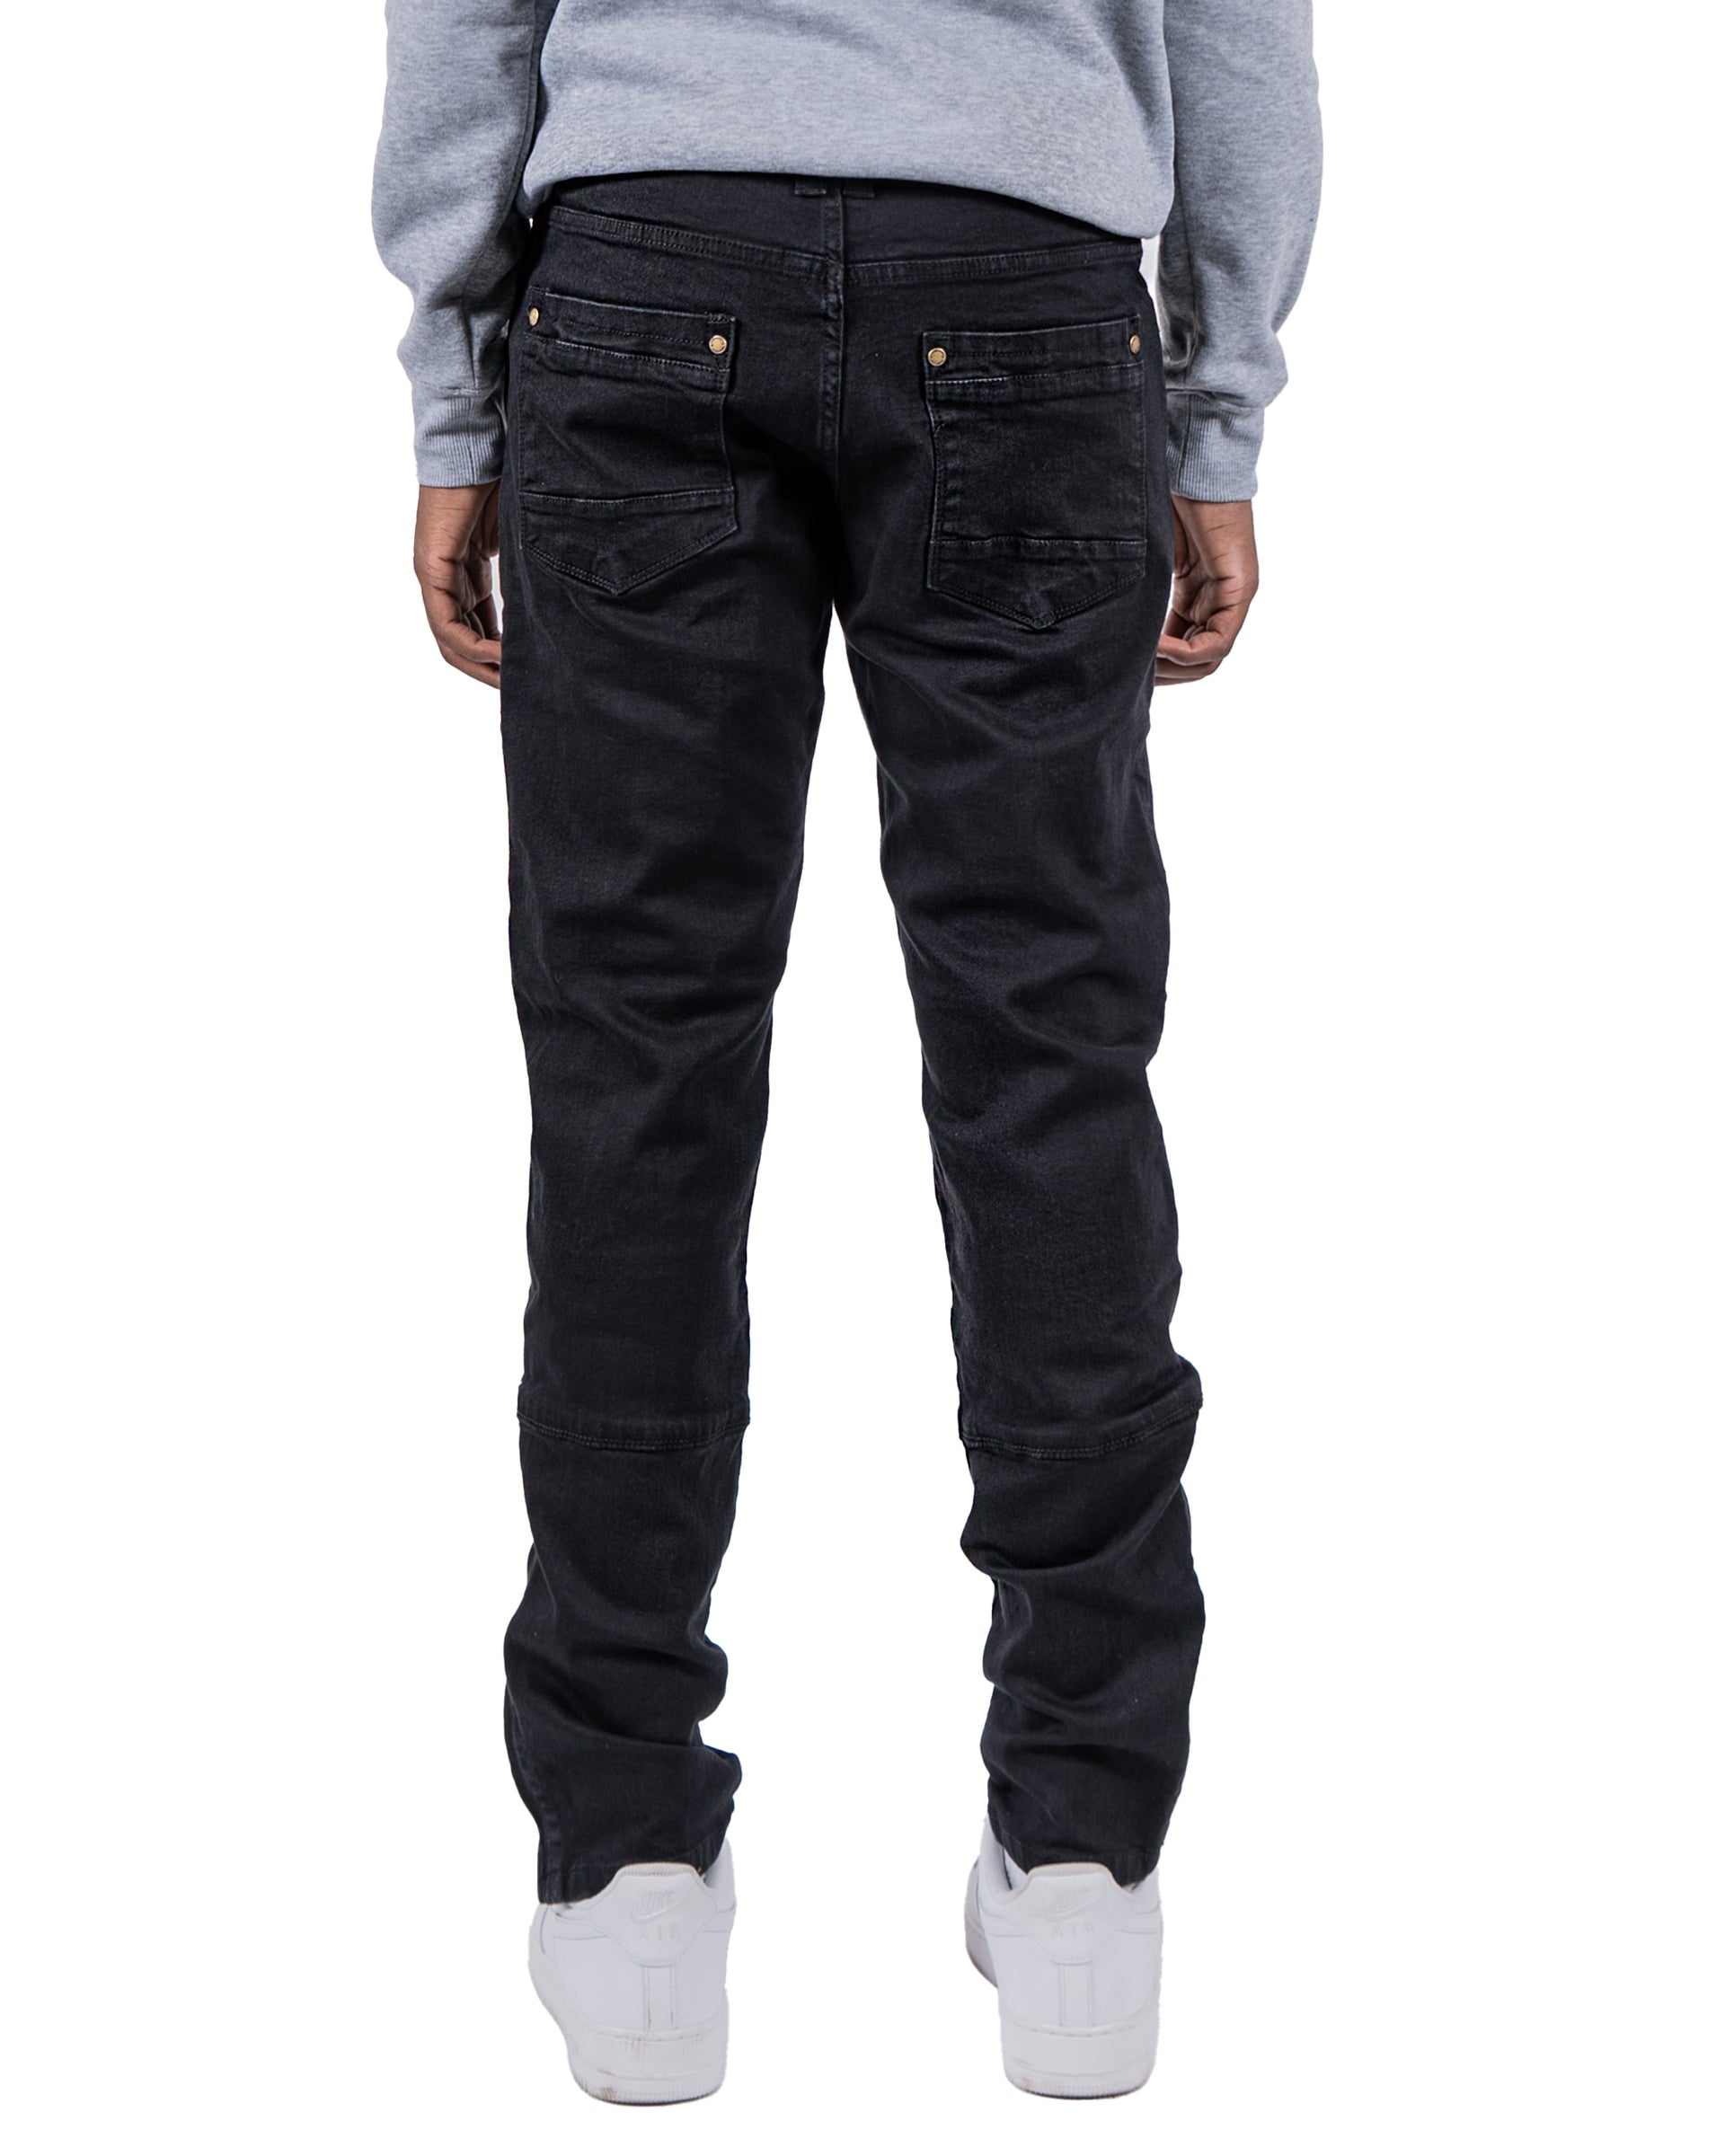 CENTRAL | Ankle Zipper Multi Seam Skinny Moto Denim Jeans in Jet Black